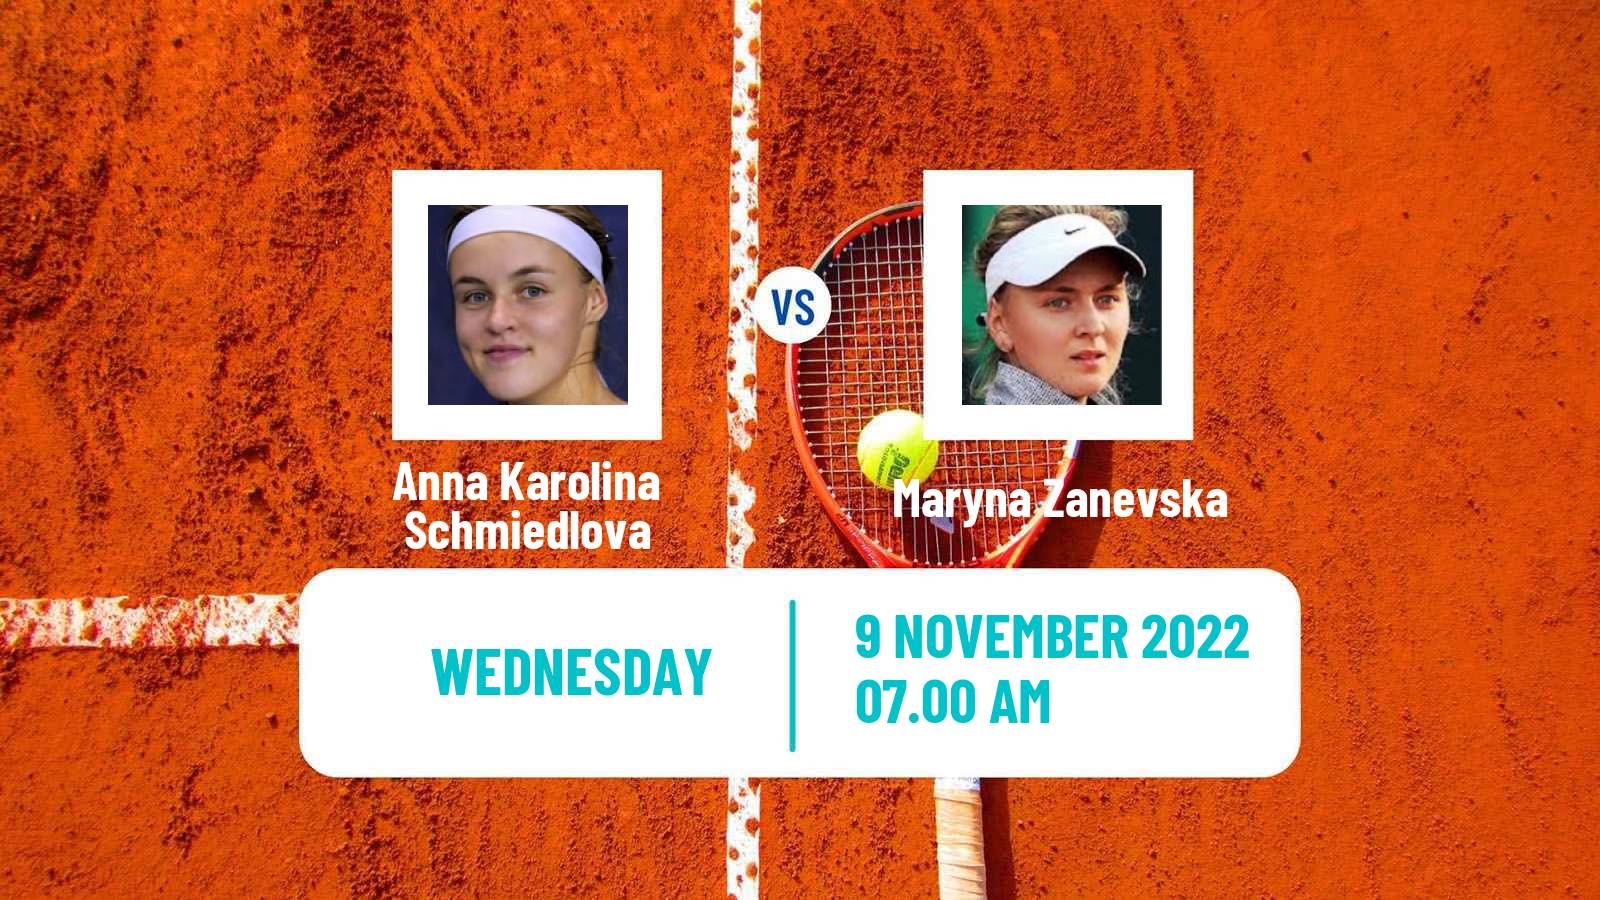 Tennis WTA Billie Jean King Cup World Group Anna Karolina Schmiedlova - Maryna Zanevska